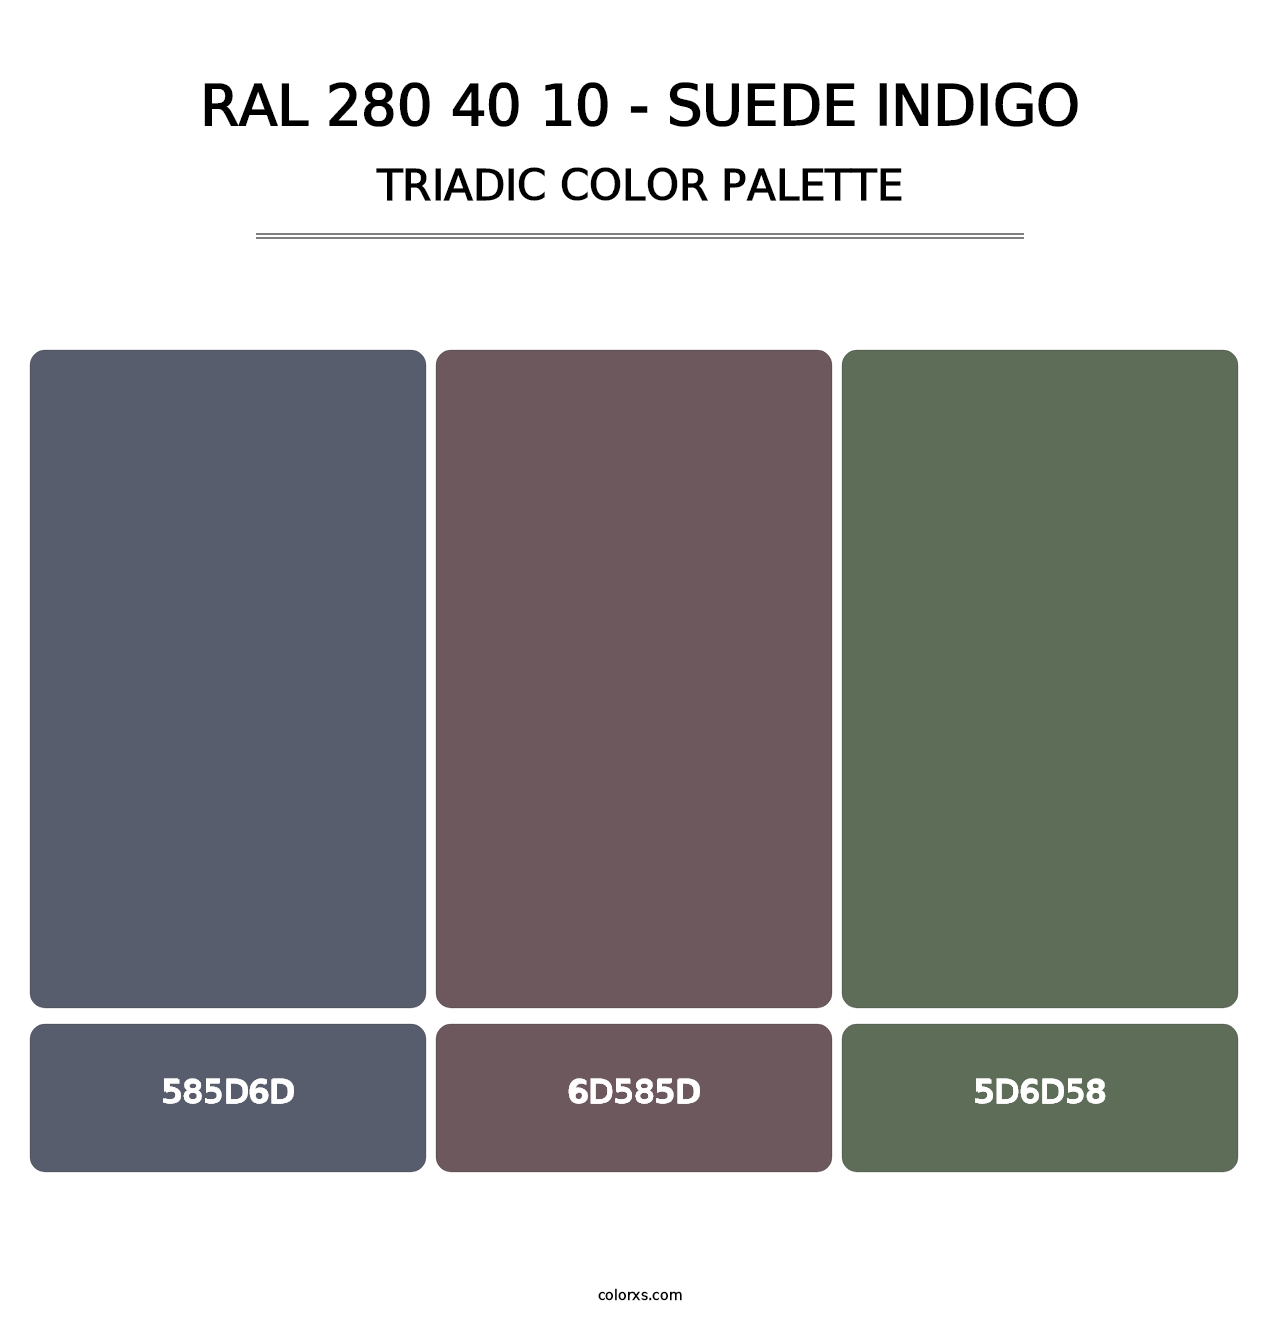 RAL 280 40 10 - Suede Indigo - Triadic Color Palette